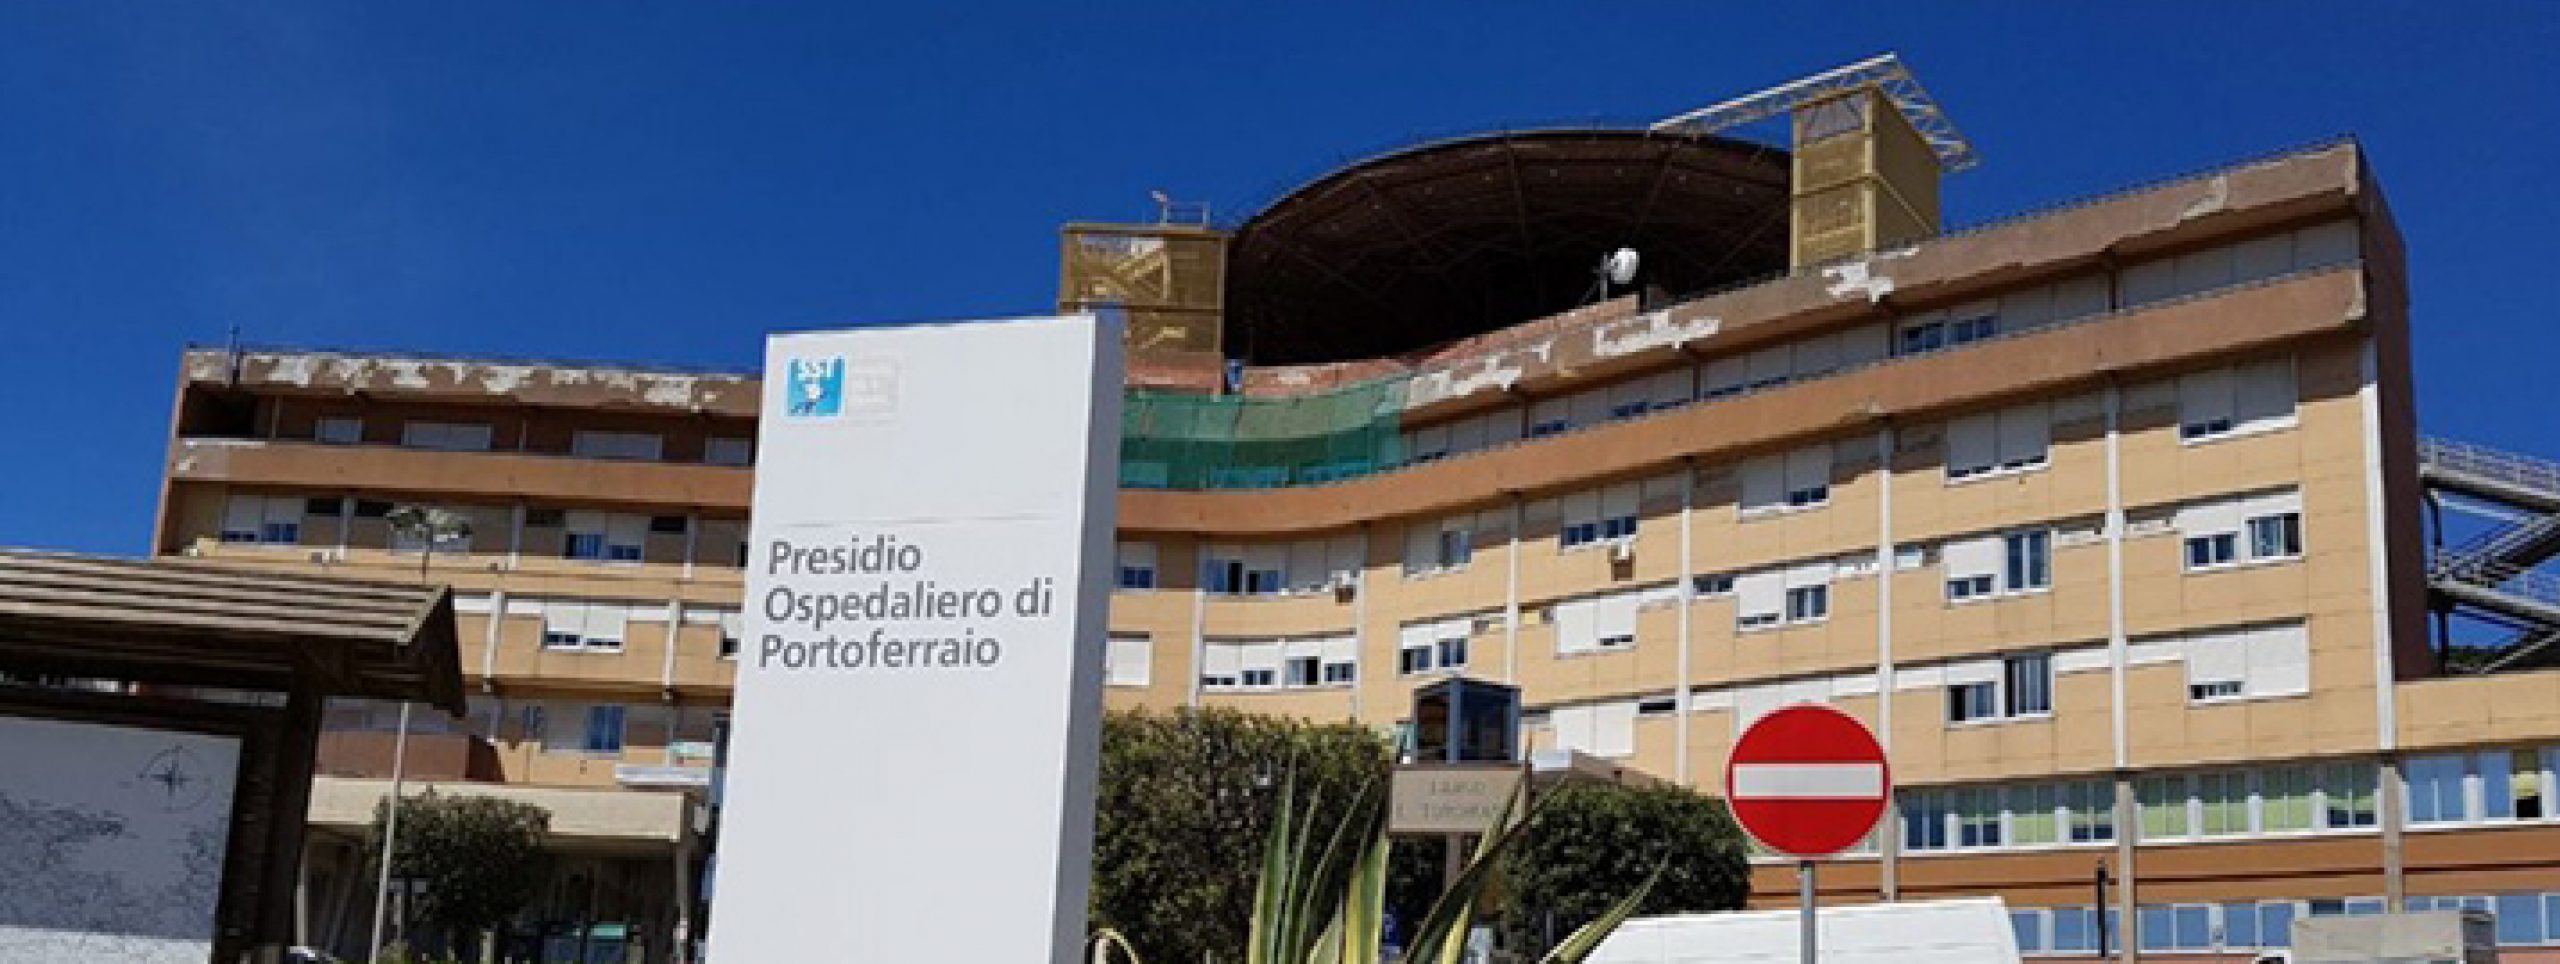 Sanità Elba, ospedale Portoferraio